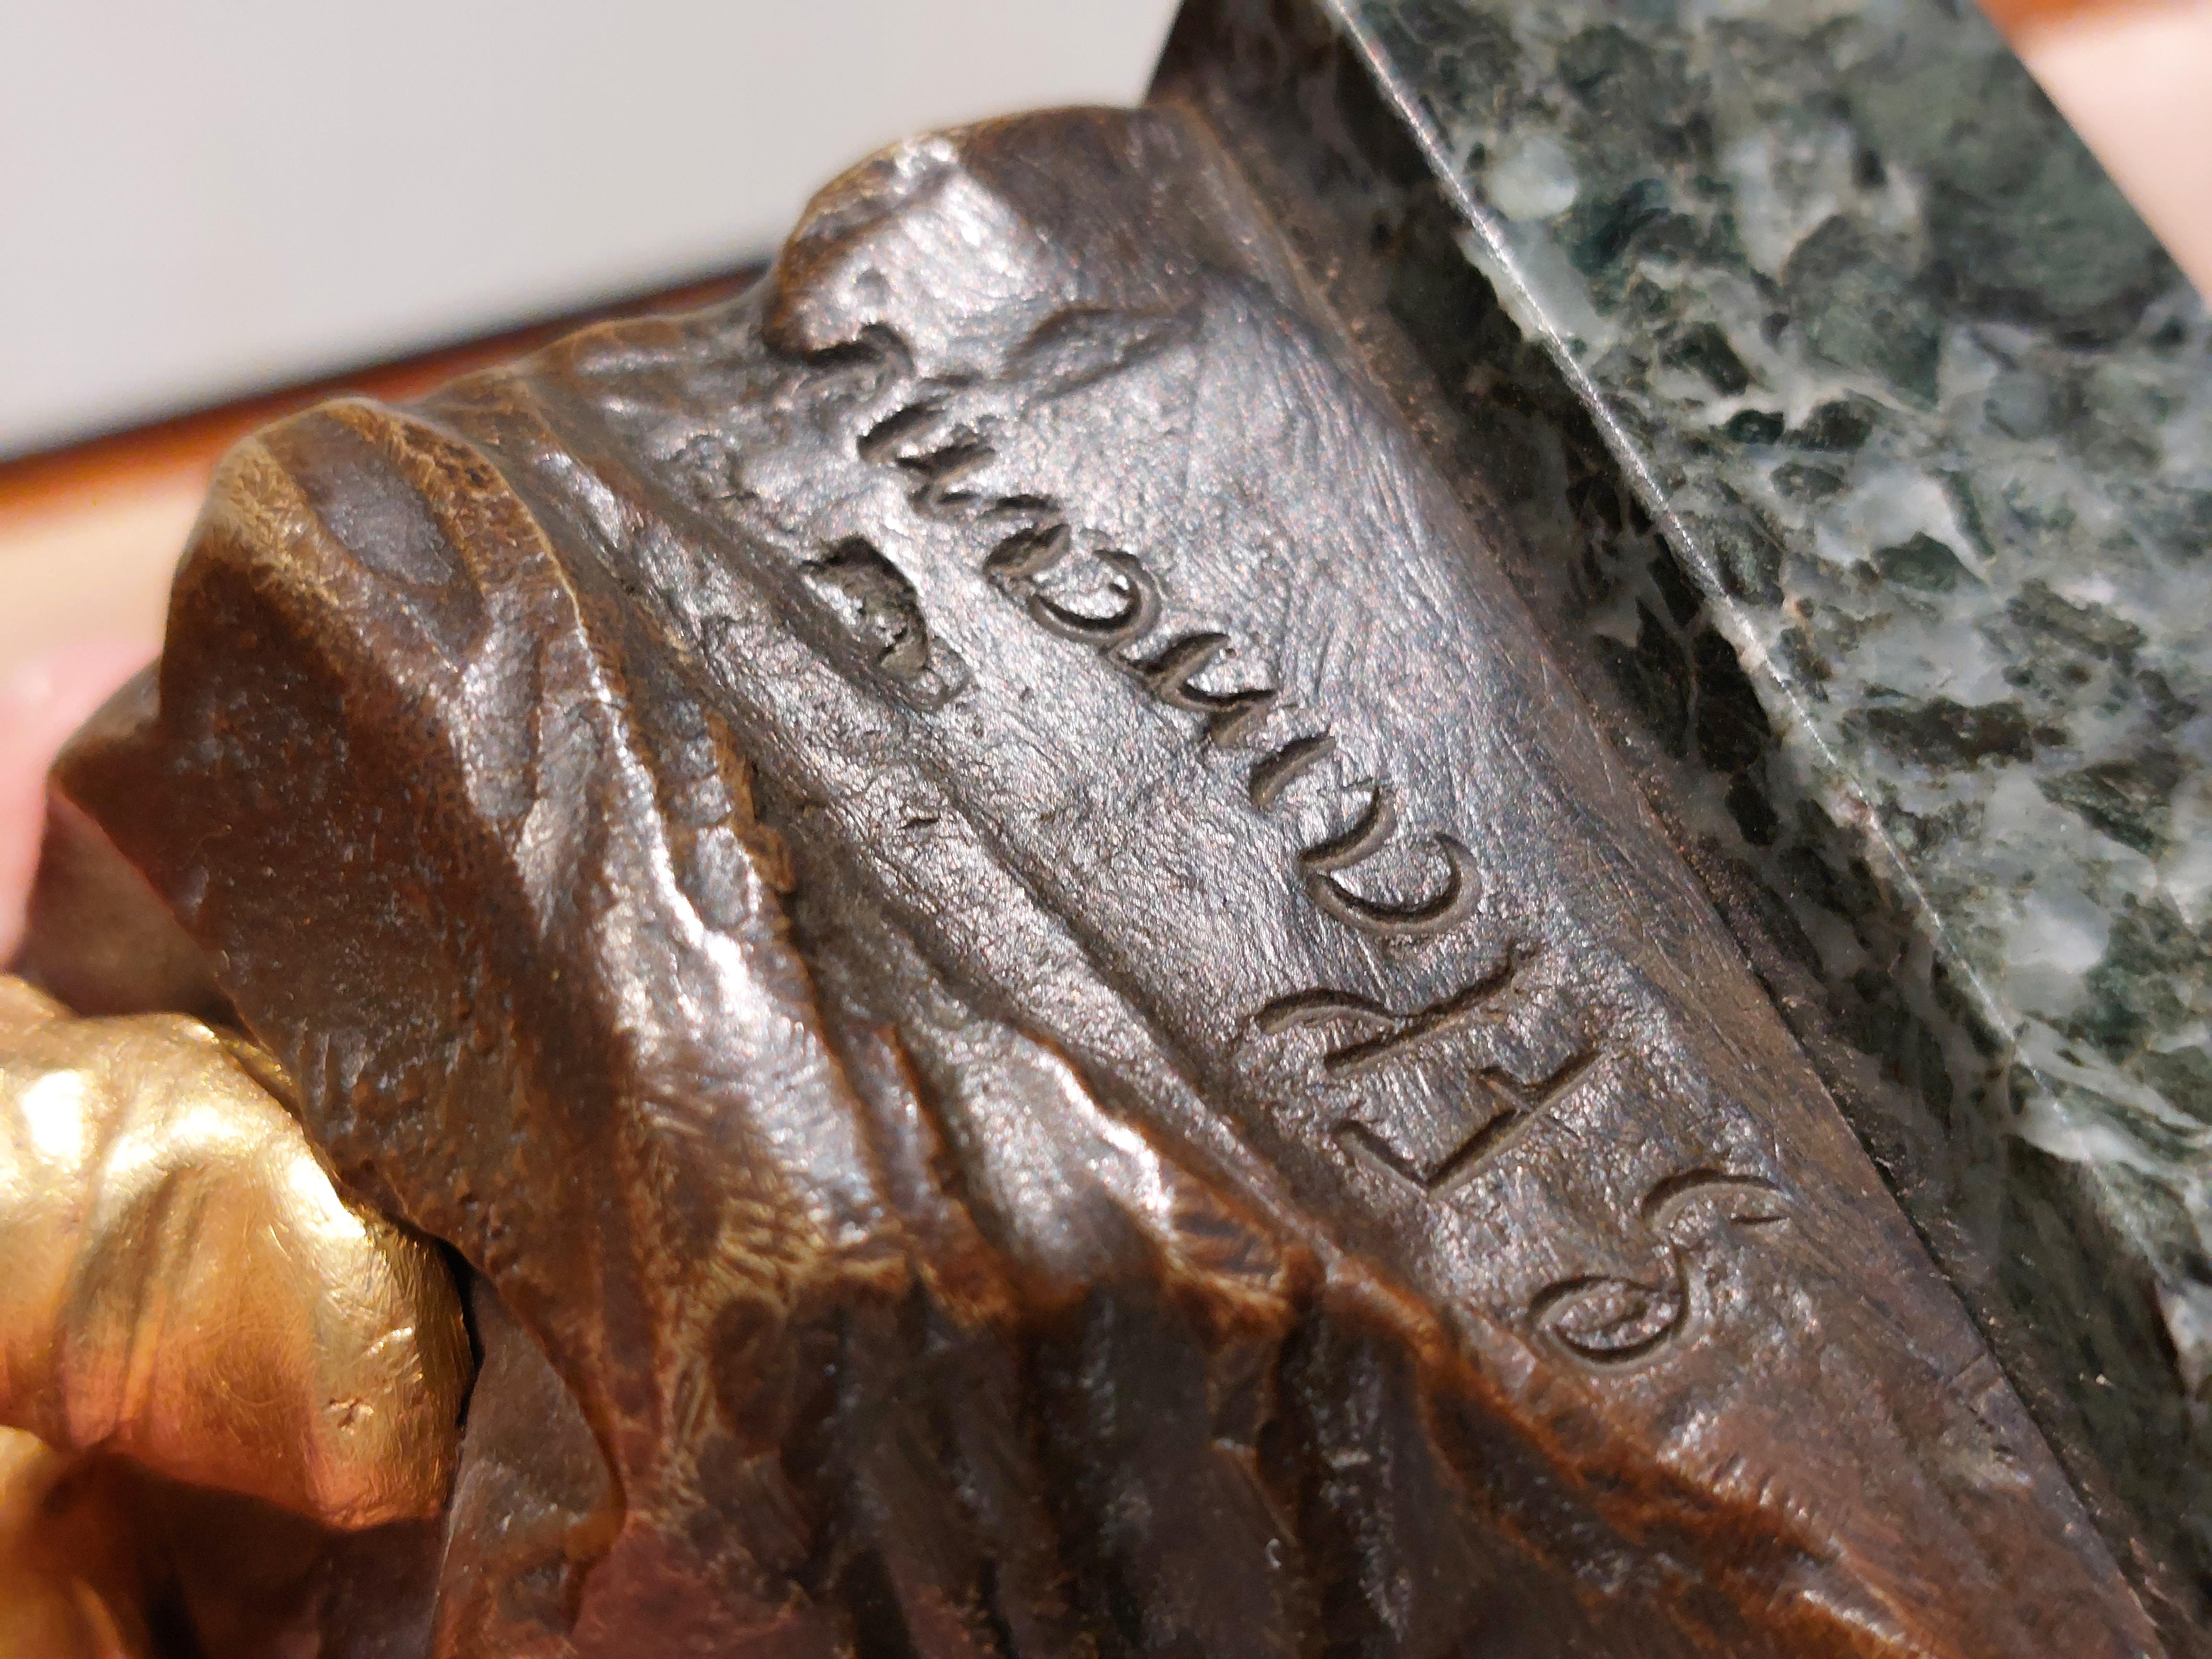 Magnifique et exceptionnellement rare paire de sculptures en bronze avec une magnifique dorure, France début 20ème siècle.
Signature sur la base de chaque sculpture 